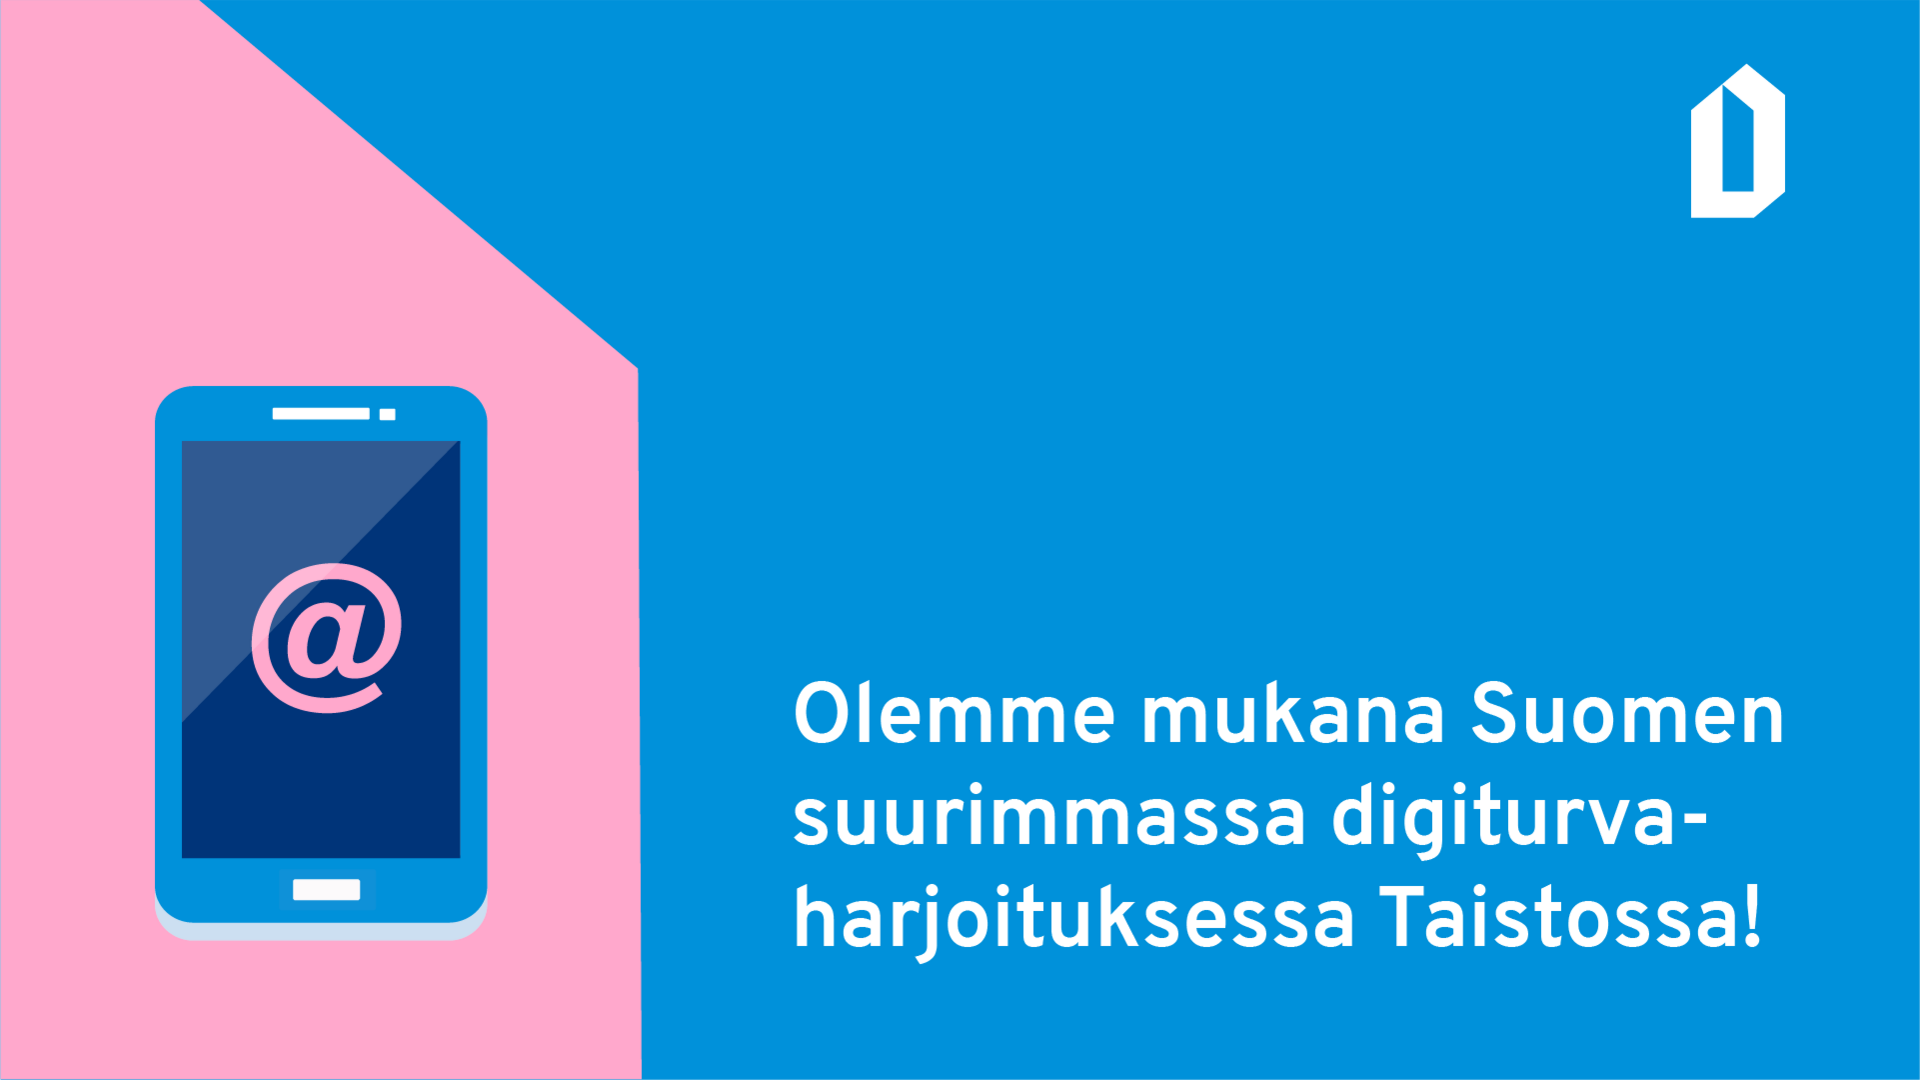 Puhelin-kuvake, jonka ruudulla @-merkki. Teksti: Olemme mukana Suomen suurimmassa digiturvaharjoituksessa Taistossa!